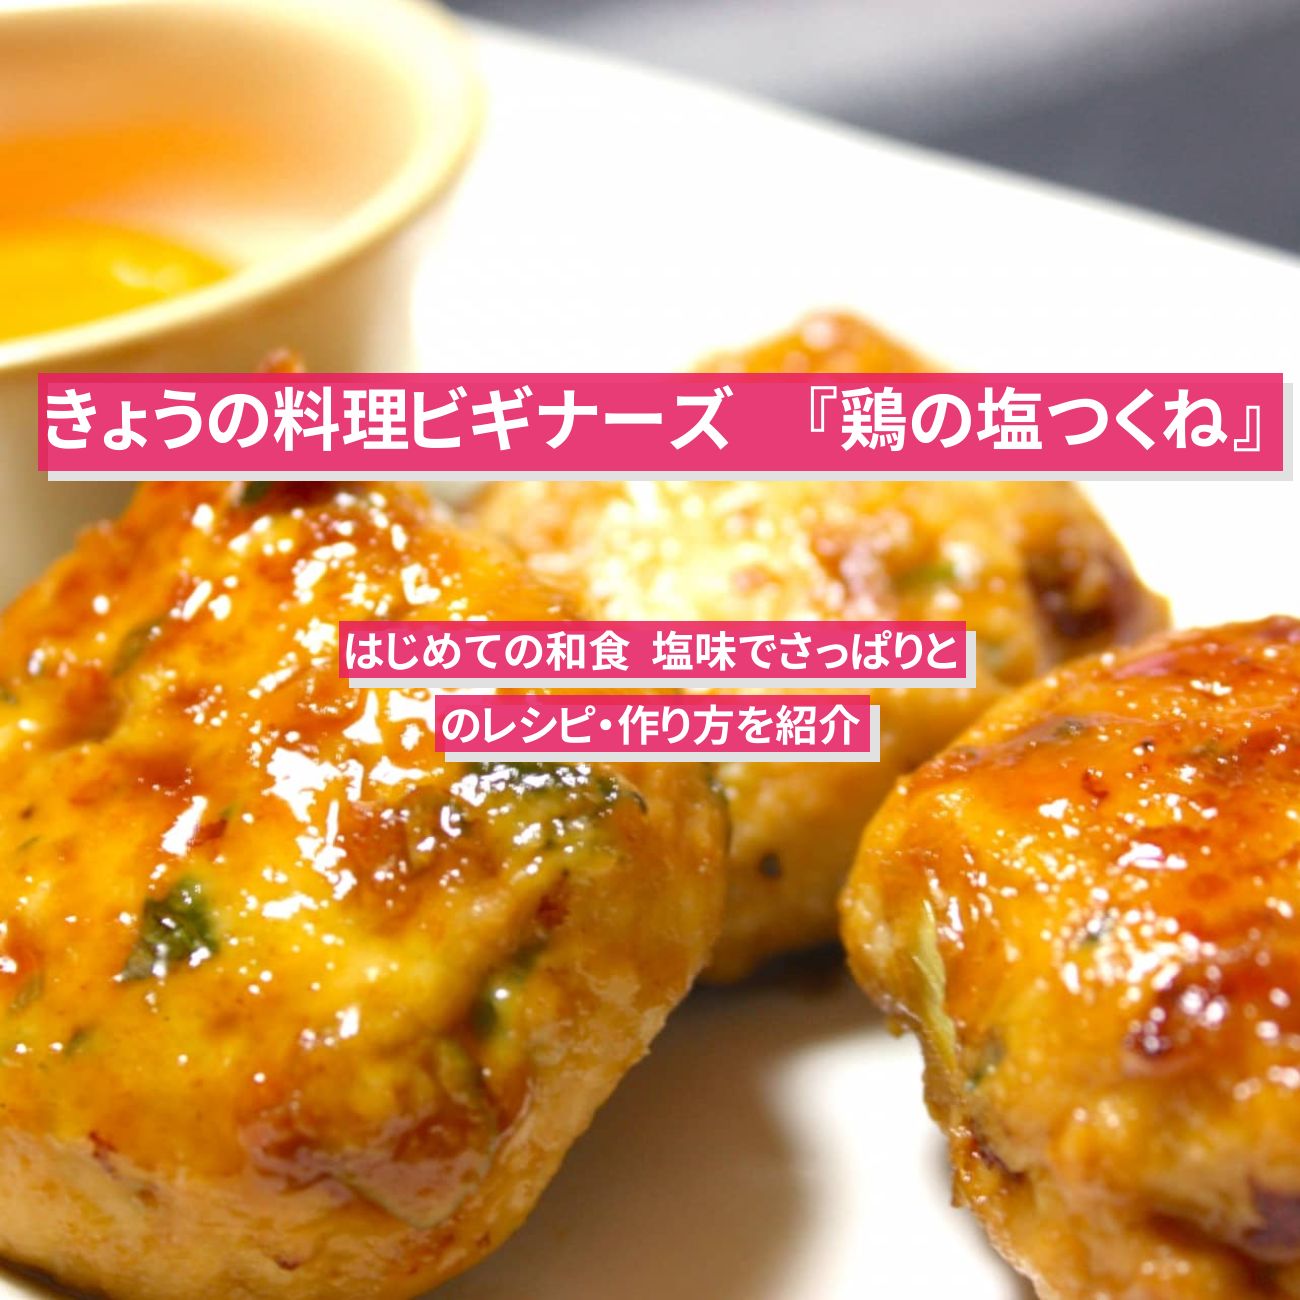 【きょうの料理ビギナーズ】『鶏の塩つくね』のレシピ・作り方を紹介